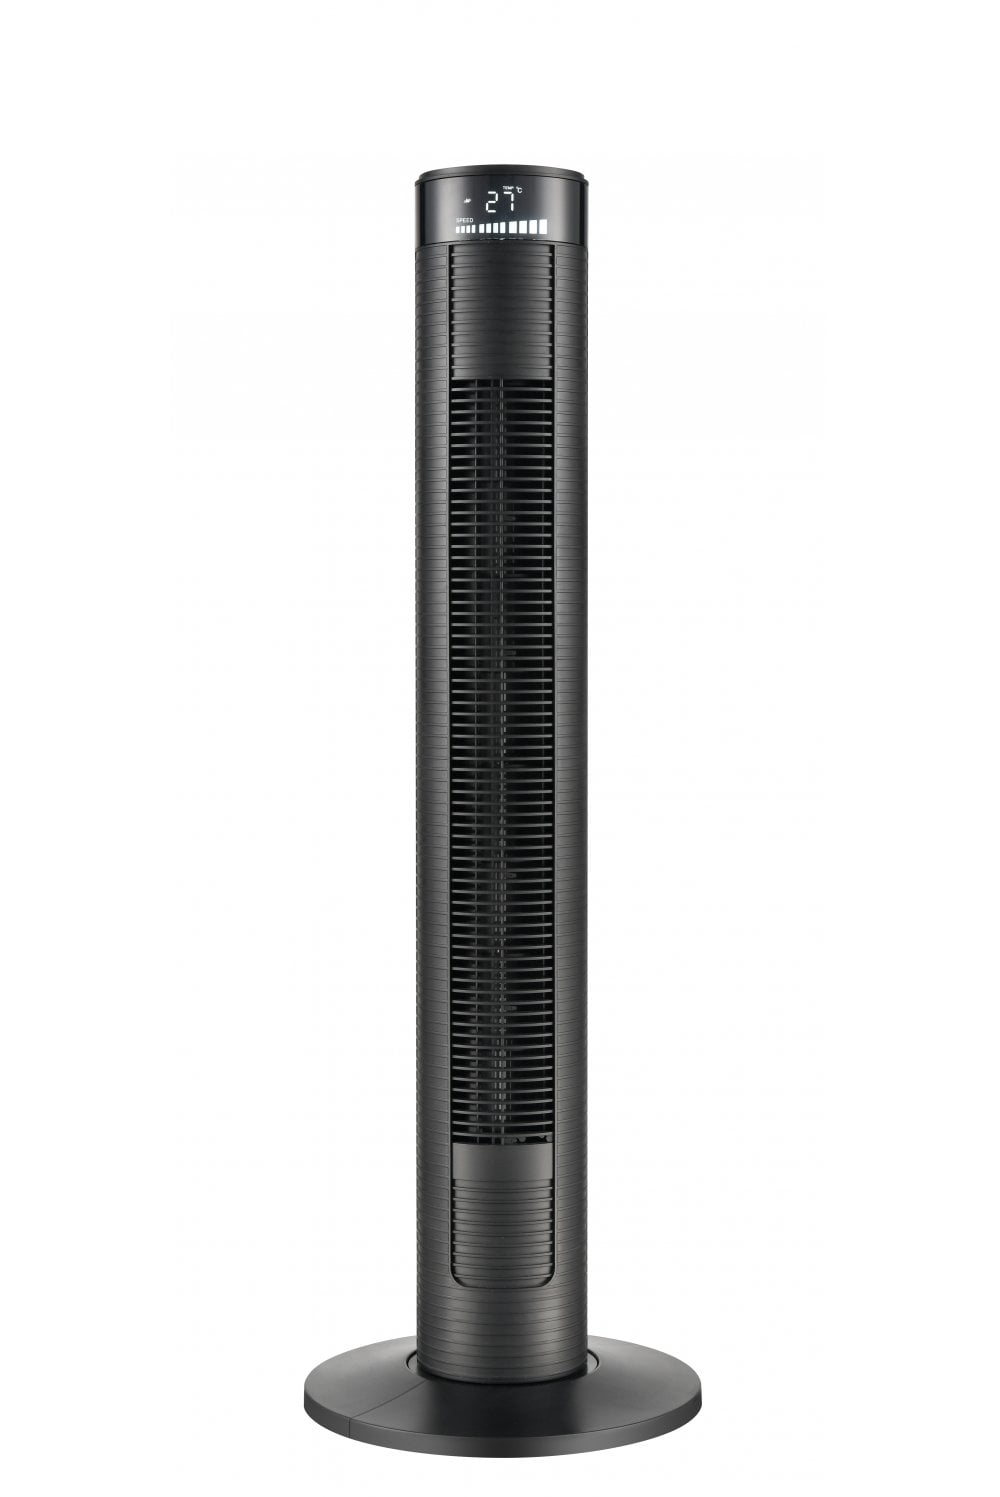 6 velocità e 3 modalità di Ventilazione Altezza 120 cm Wi-Fi 55 Watt Alexa e Google Assistant Ventilatore con connessione Smart Home NHC Smart Home Ventilatore a Torre 